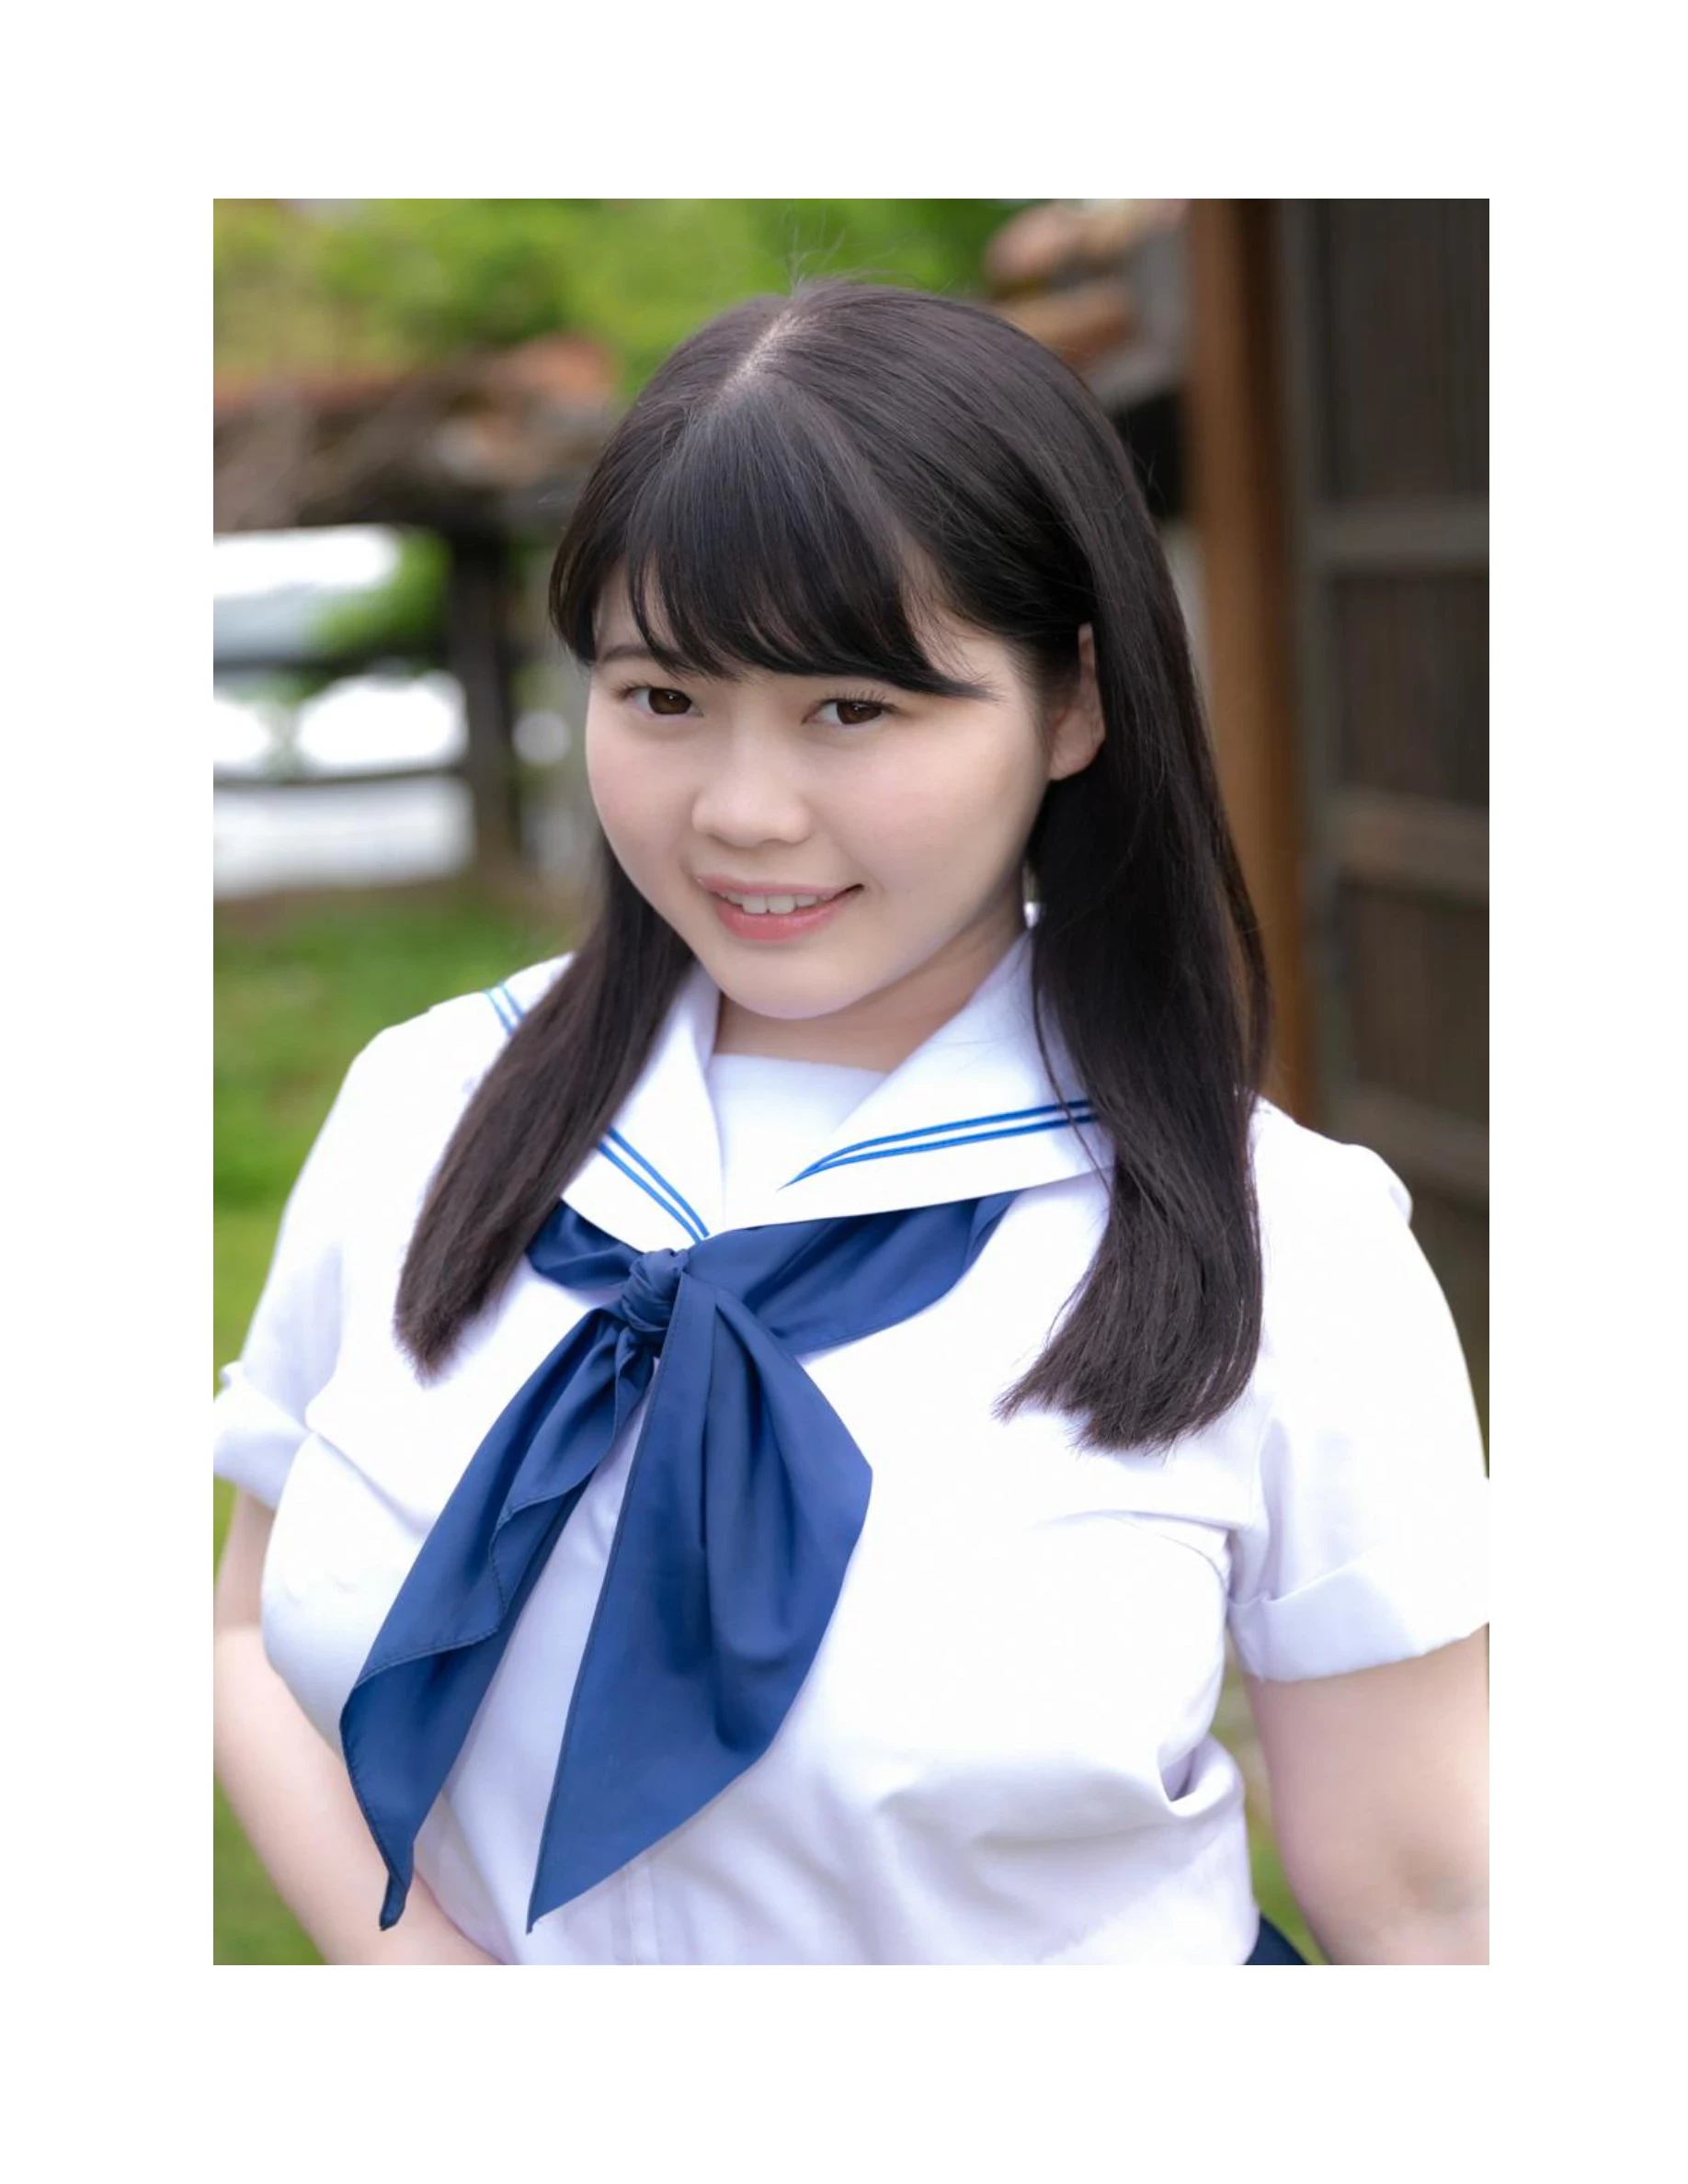 伊川愛梨 卒業旅行 夏 寫真集 J罩杯偶像美少女傳説-54